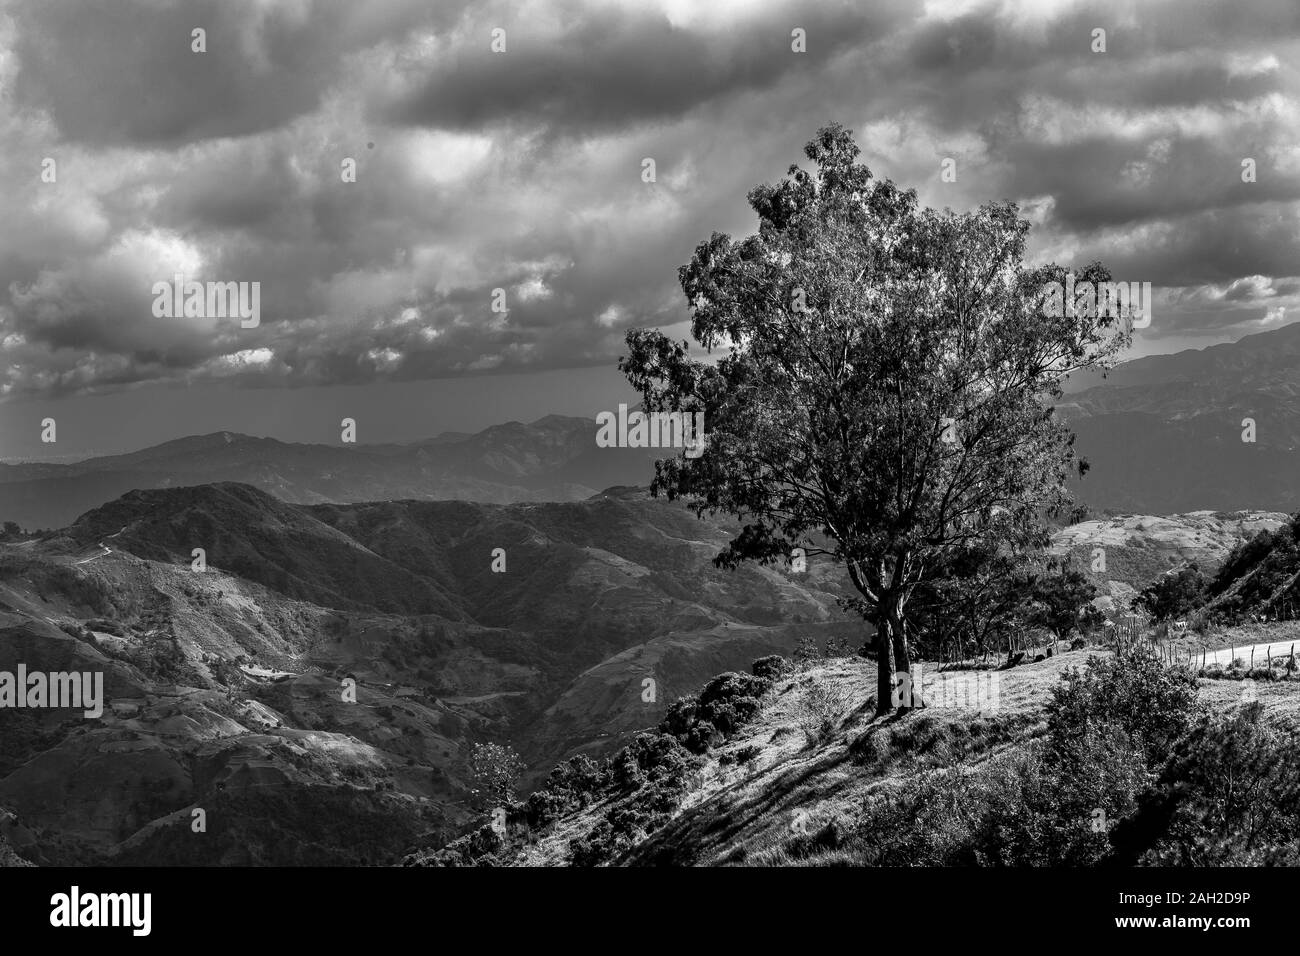 Dramatische schwarz-weiß Bild von einer isolierten Baum hoch oben in der Karibik in den Bergen der Dominikanischen Republik. Stockfoto